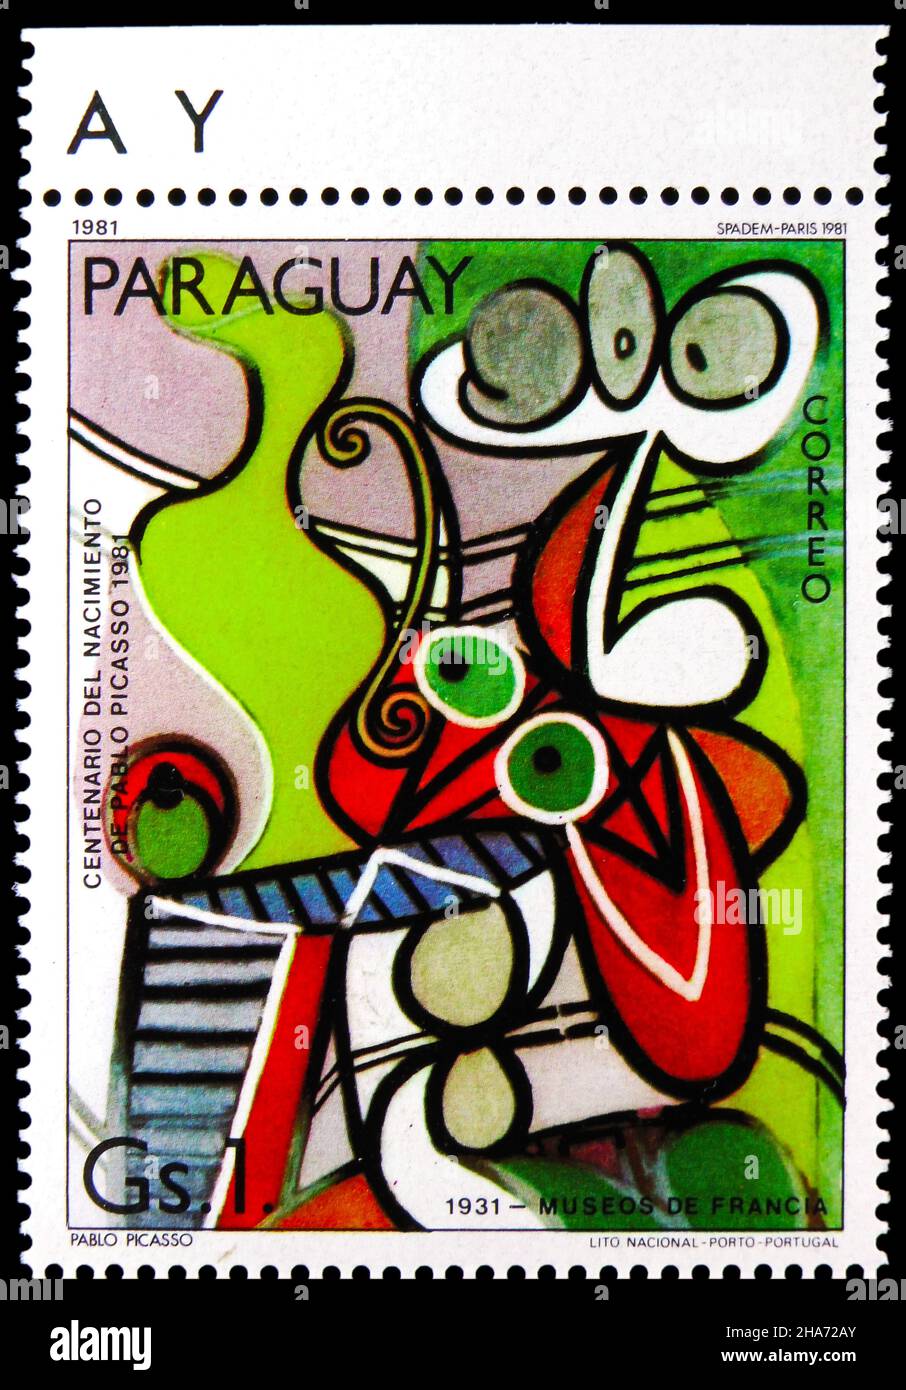 MOSCOU, RUSSIE - 4 NOVEMBRE 2021: Timbre-poste imprimé au Paraguay montre encore-vie, série Pablo Picasso, vers 1981 Banque D'Images